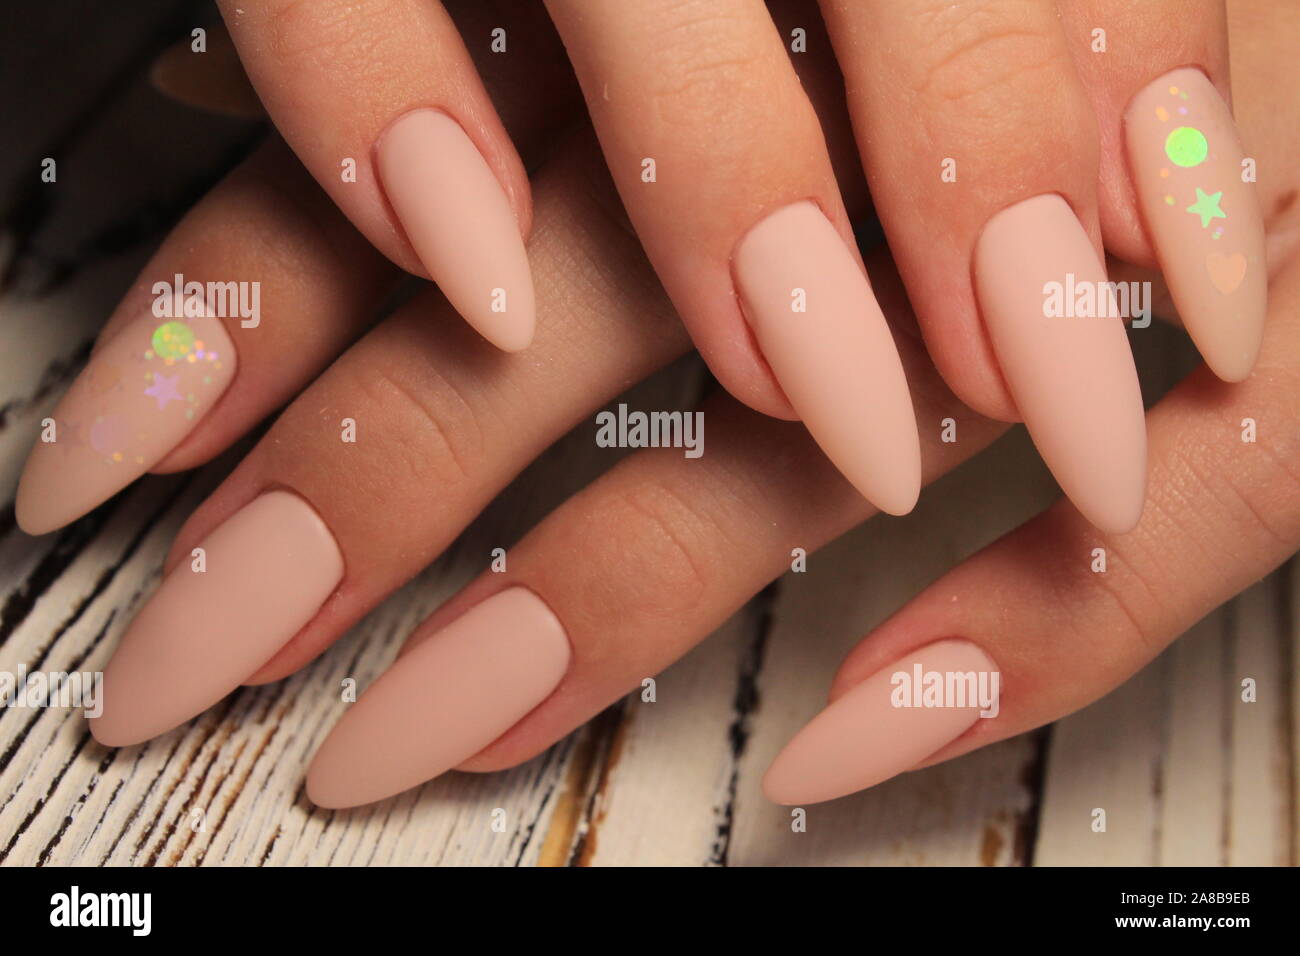 sexy manicure on long beautiful nails Stock Photo - Alamy